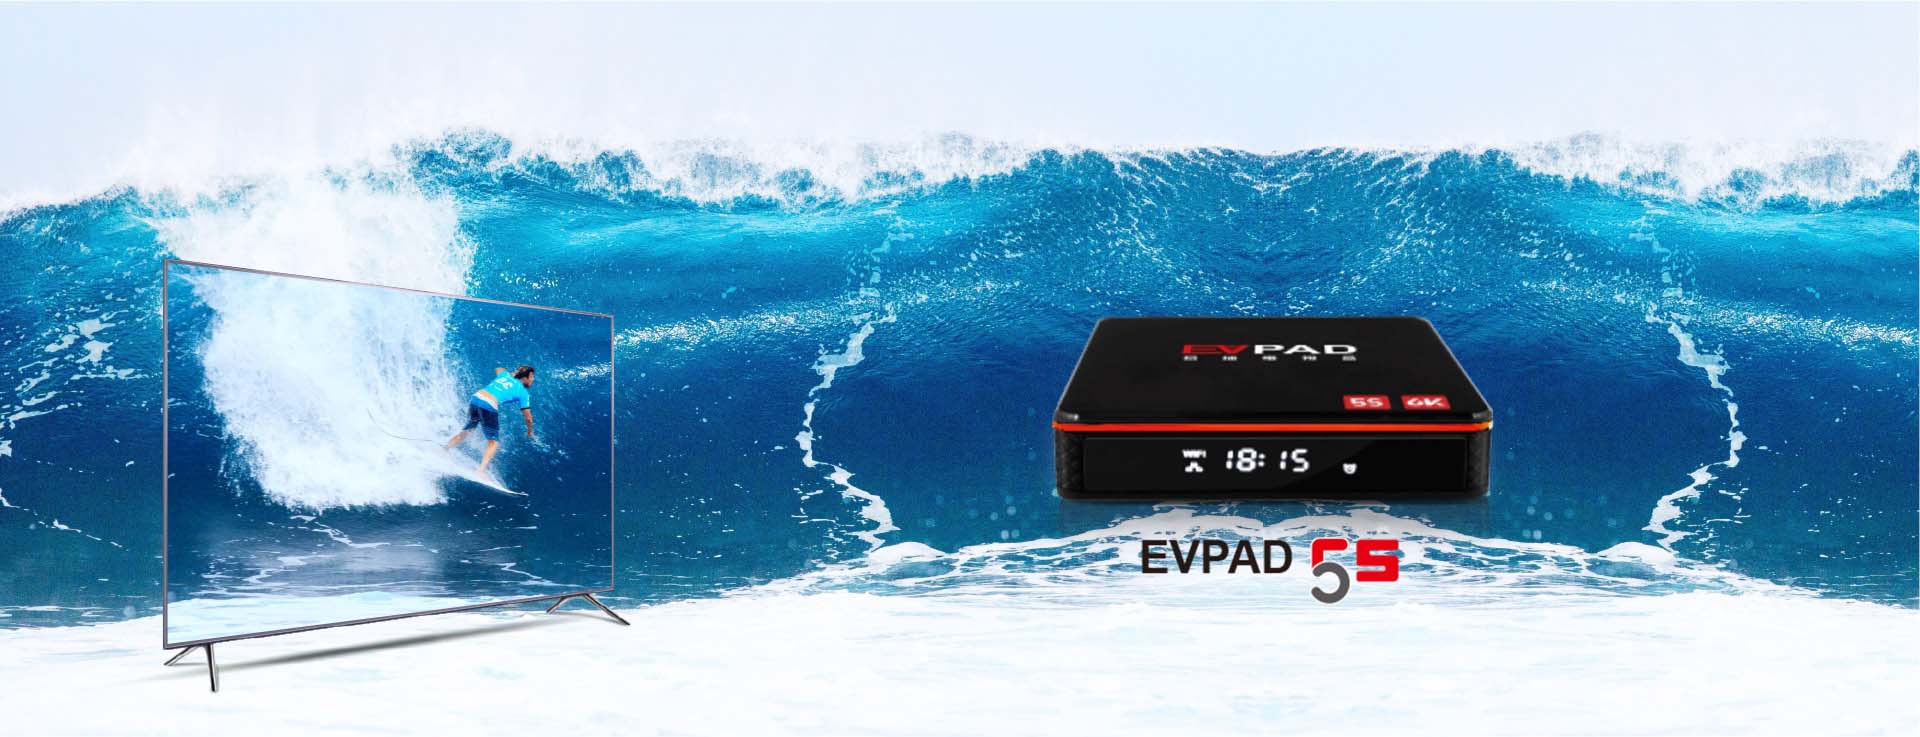 EVPAD 5S - صندوق تلفزيون AI الأول في العالم الذي يتم تنشيطه بالصوت